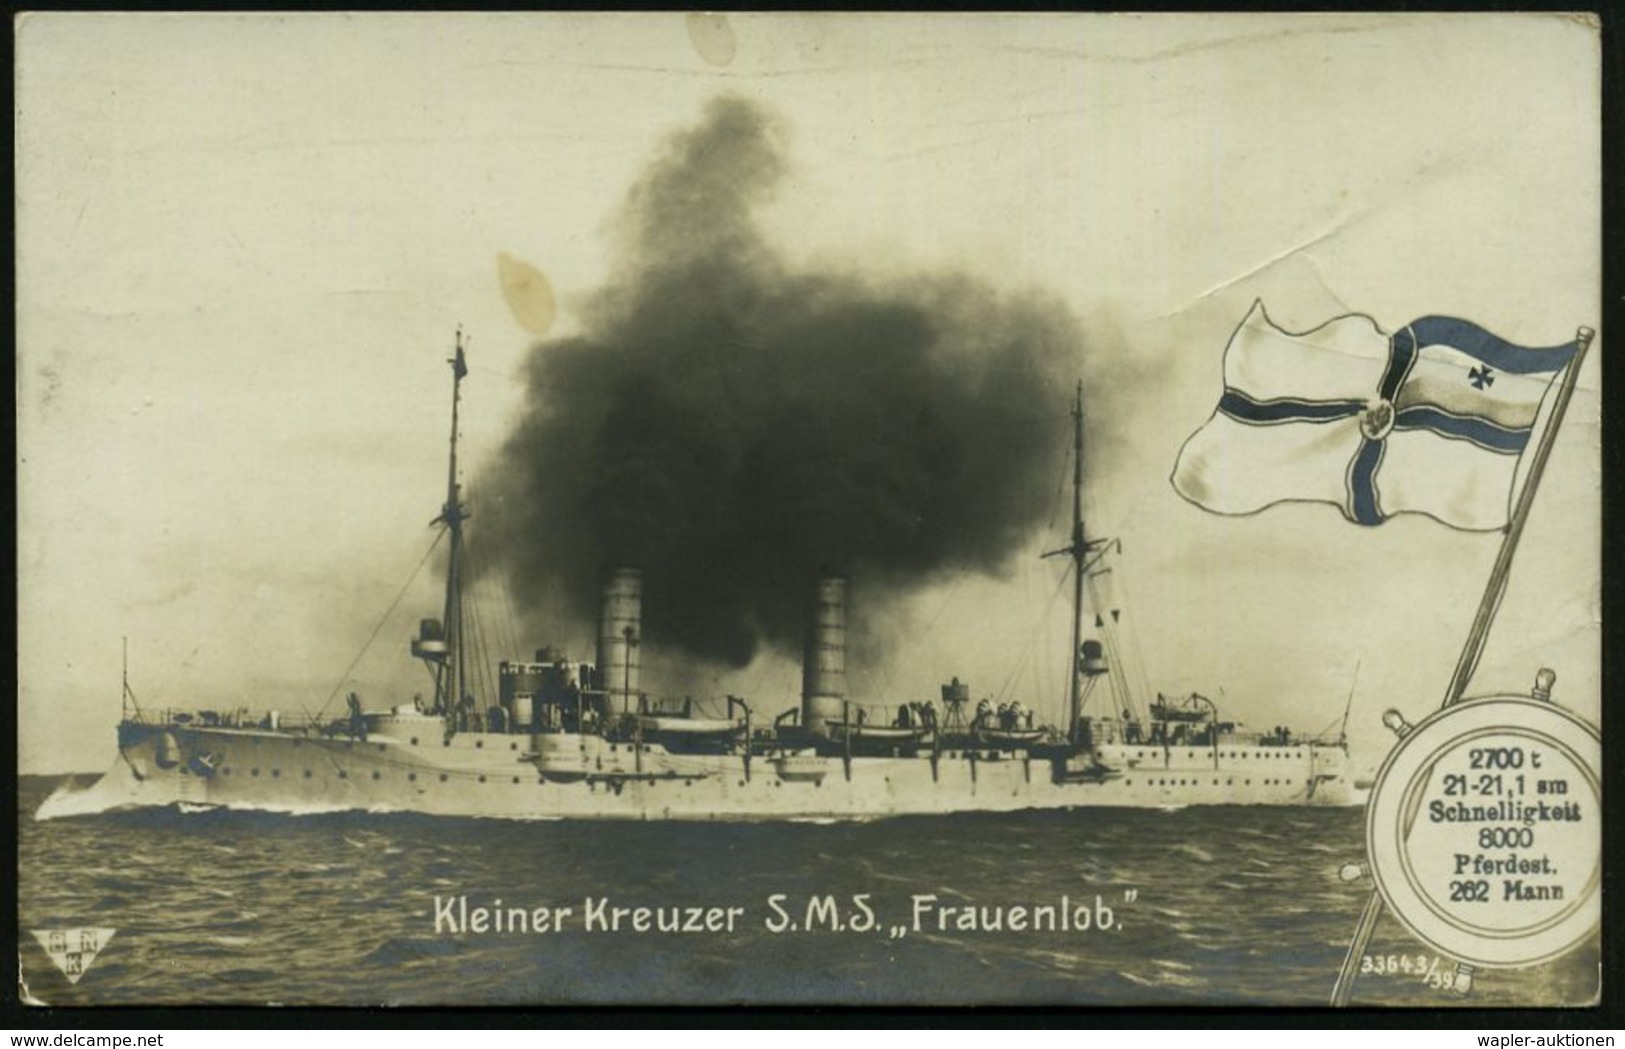 DEUTSCHES REICH 1914 Viol. 1K-Steg-HdN: Kaiserliche Marine/Kommando S.M.S. "Frauenlob" = Kleiner Kreuzer, Am 31. Mai 191 - Schiffahrt